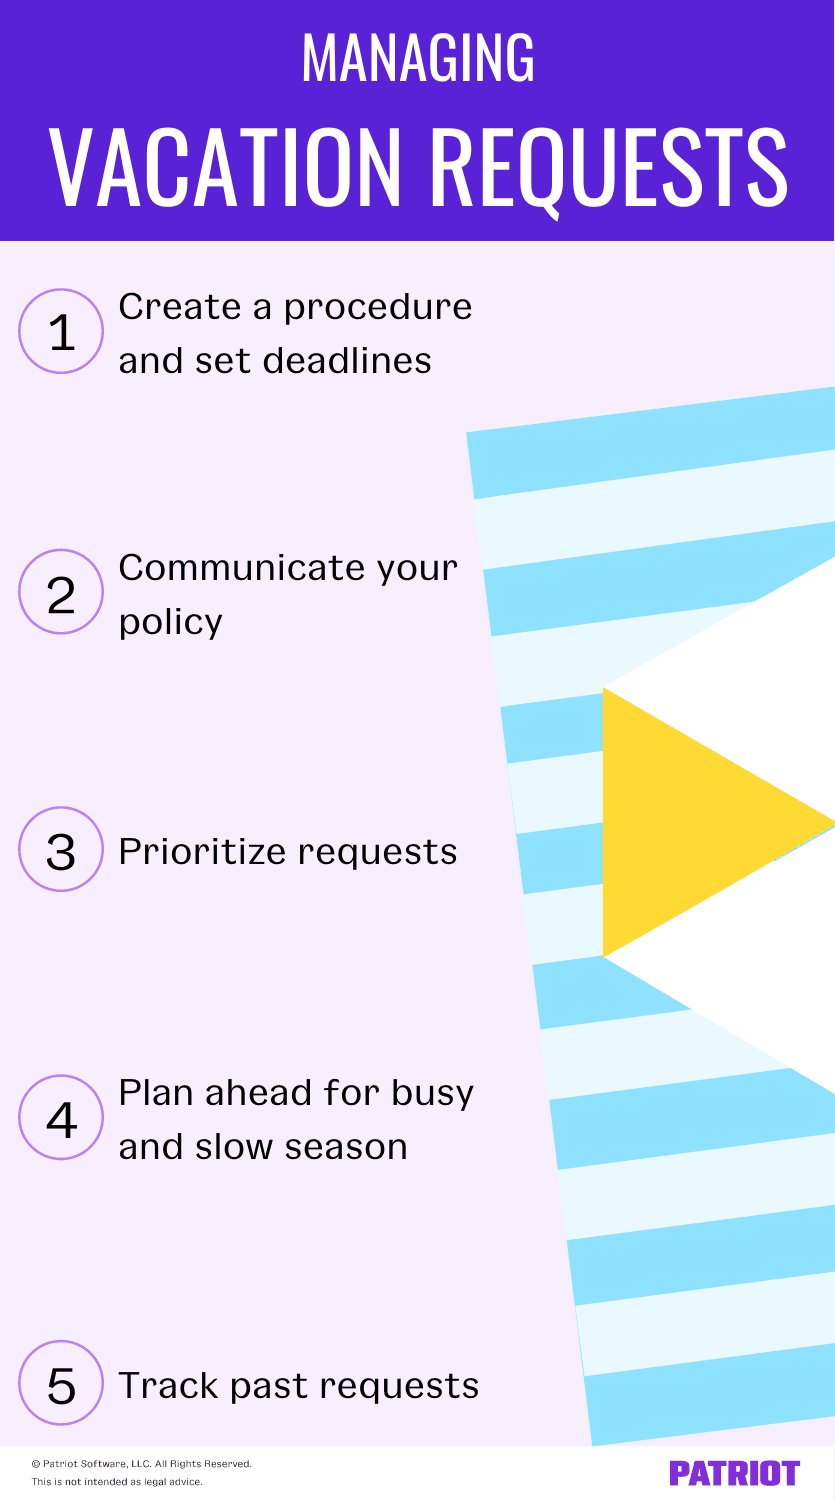 管理假期请求:创建一个程序，设定截止日期，沟通你的策略，优先处理请求，提前计划繁忙和淡季，跟踪过去的请求